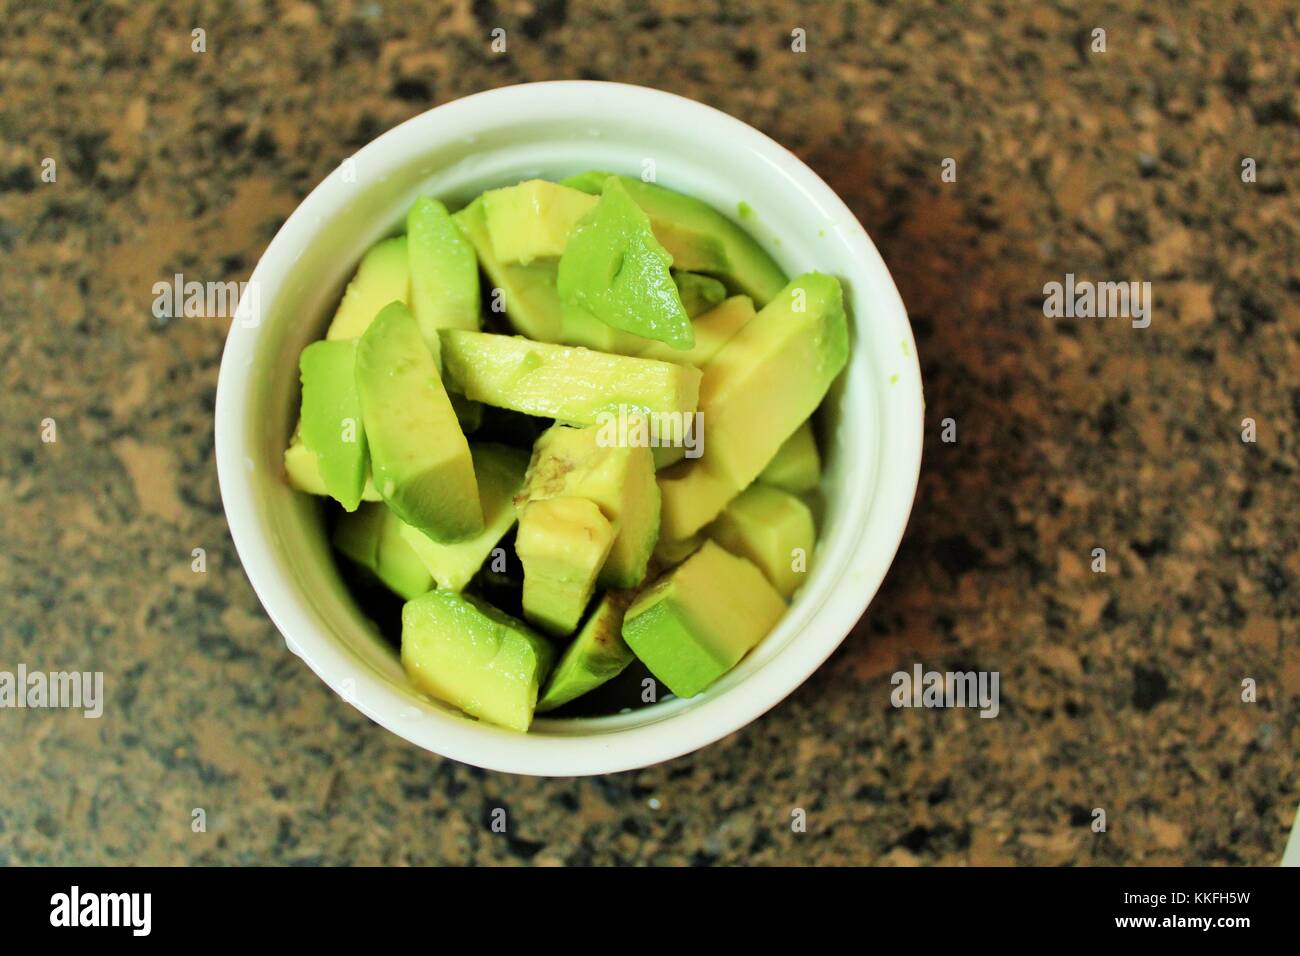 Avocado- healthy fats. Stock Photo